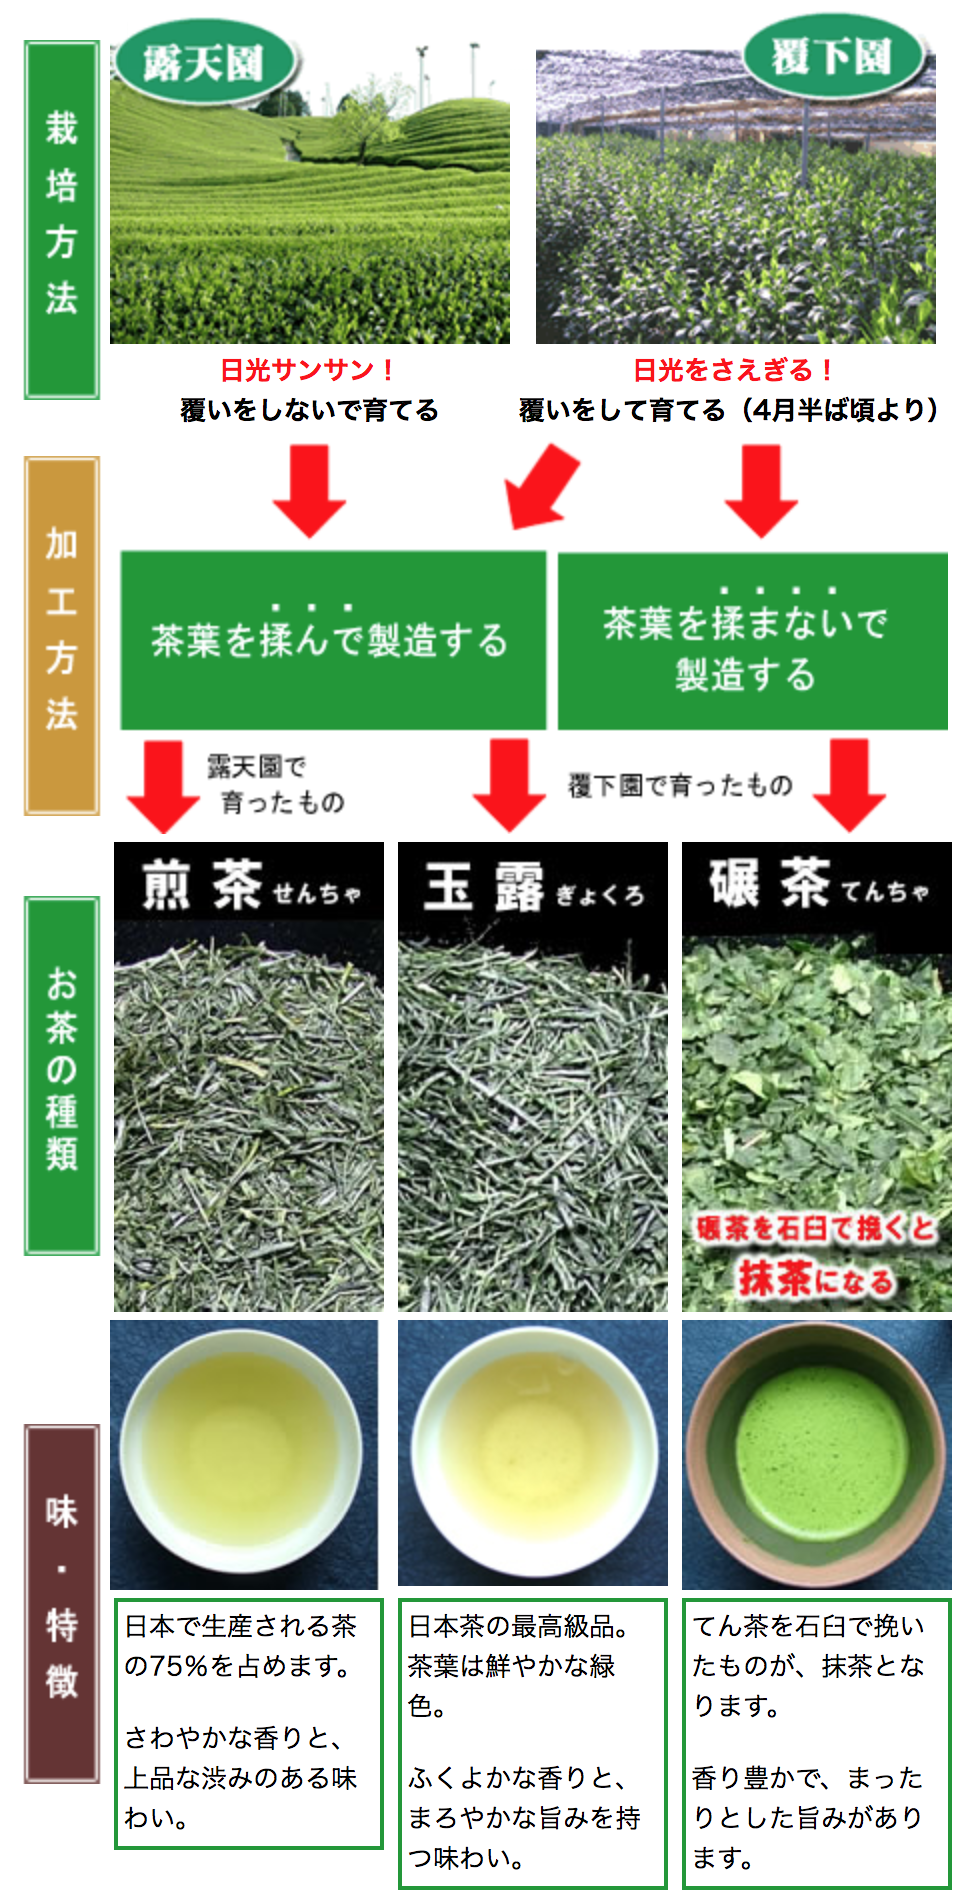 お茶 日本茶 緑茶 の種類 アニメで学ぶ 京都 舞妓の茶本舗